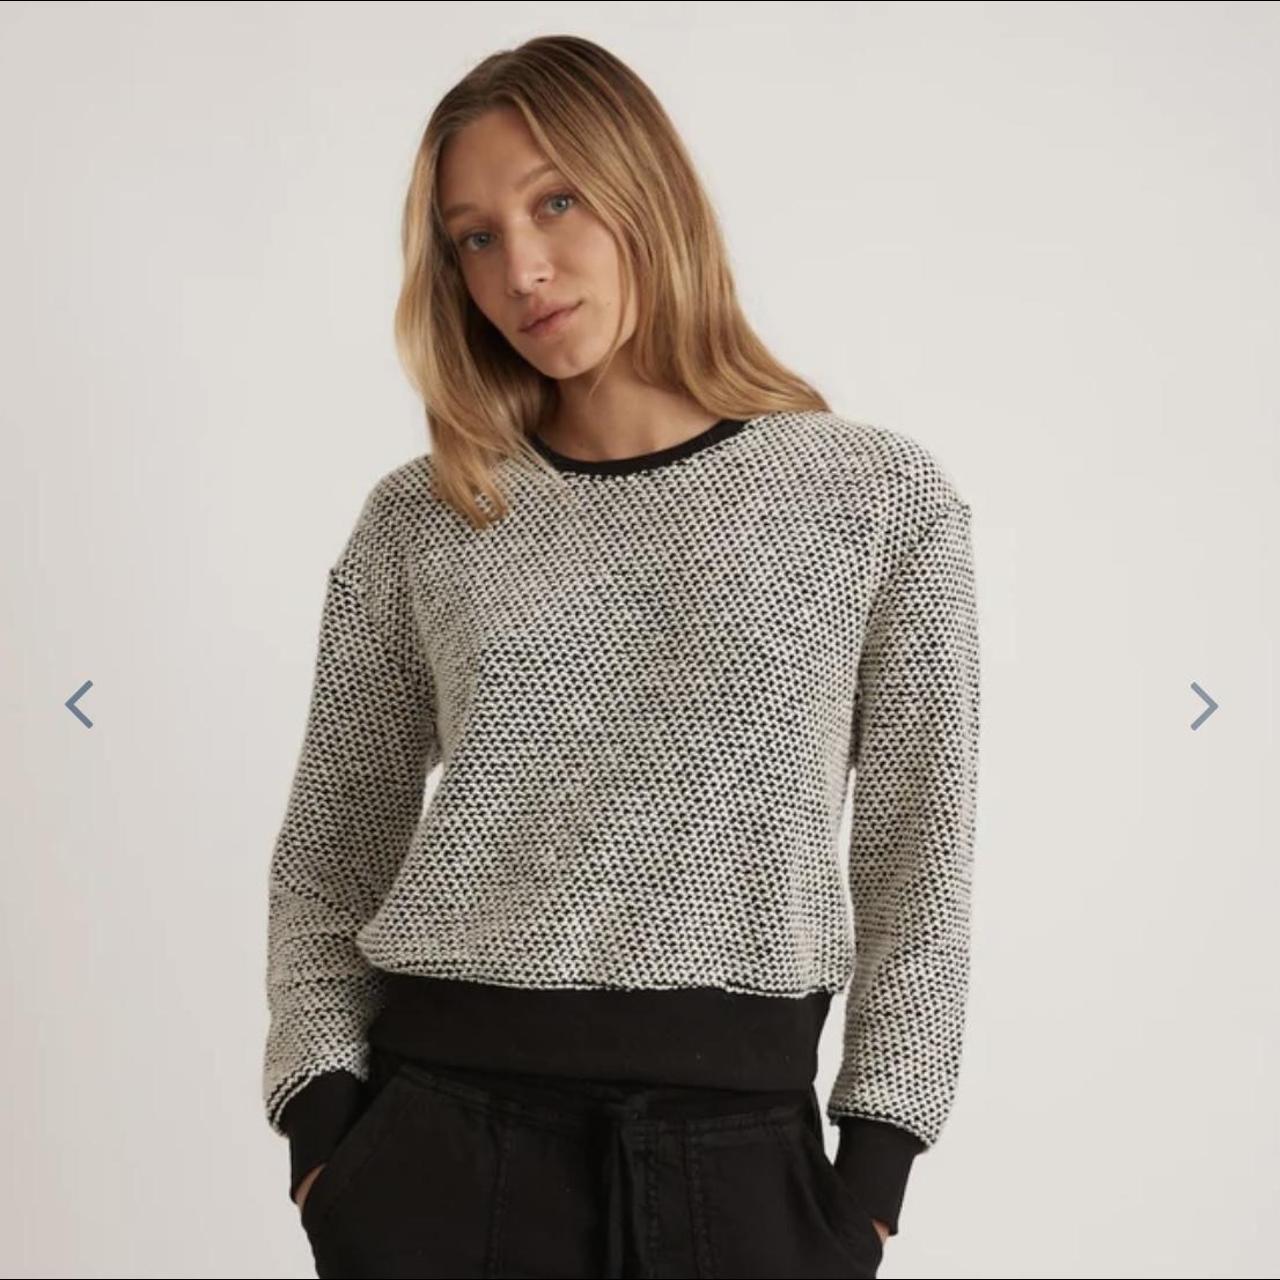 Product Image 1 - Marine Layer Birdseye Sweater. Size